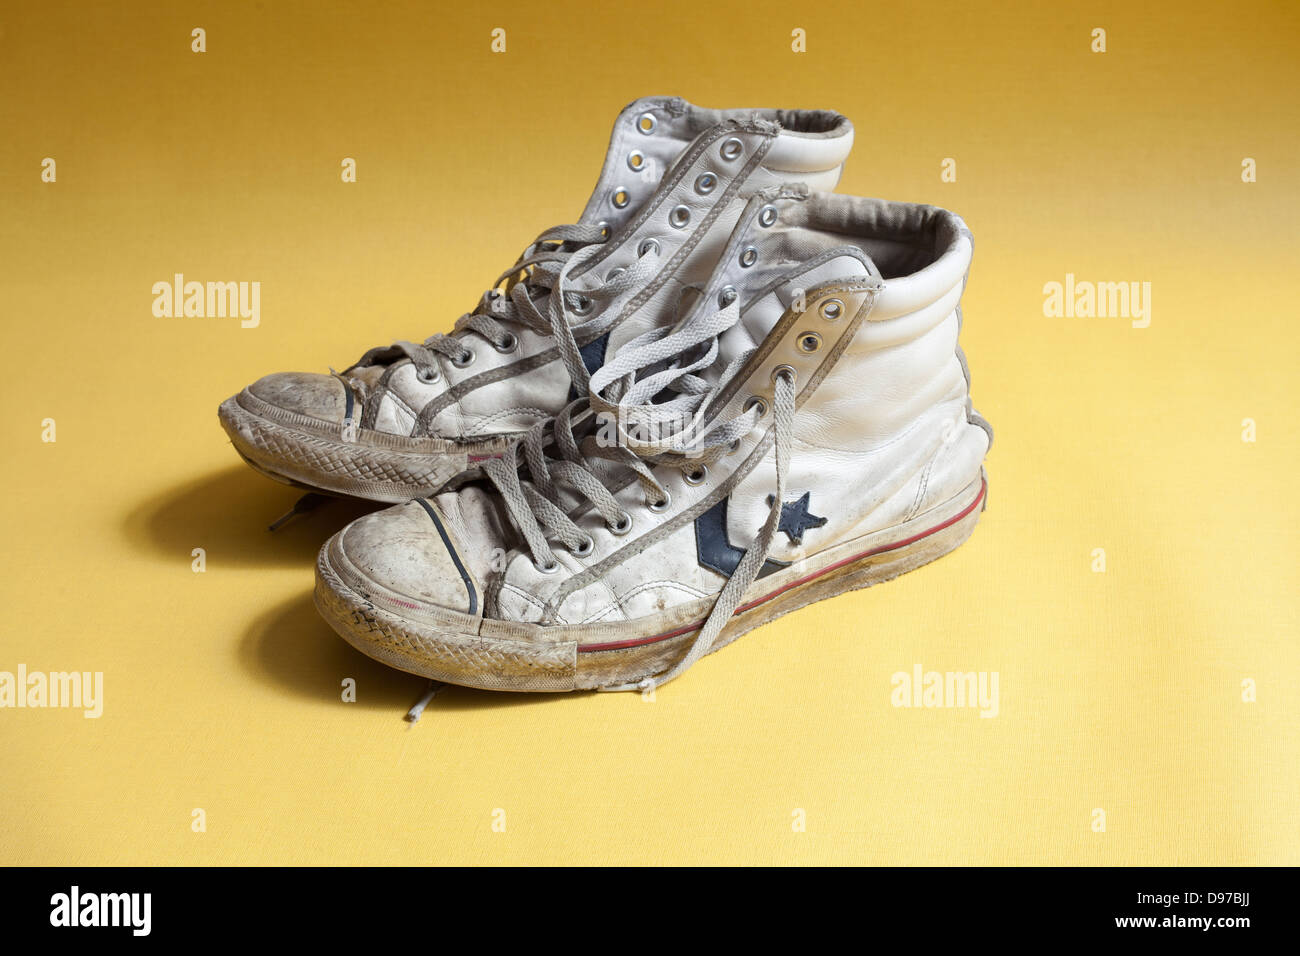 Converse boots immagini e fotografie stock ad alta risoluzione - Alamy